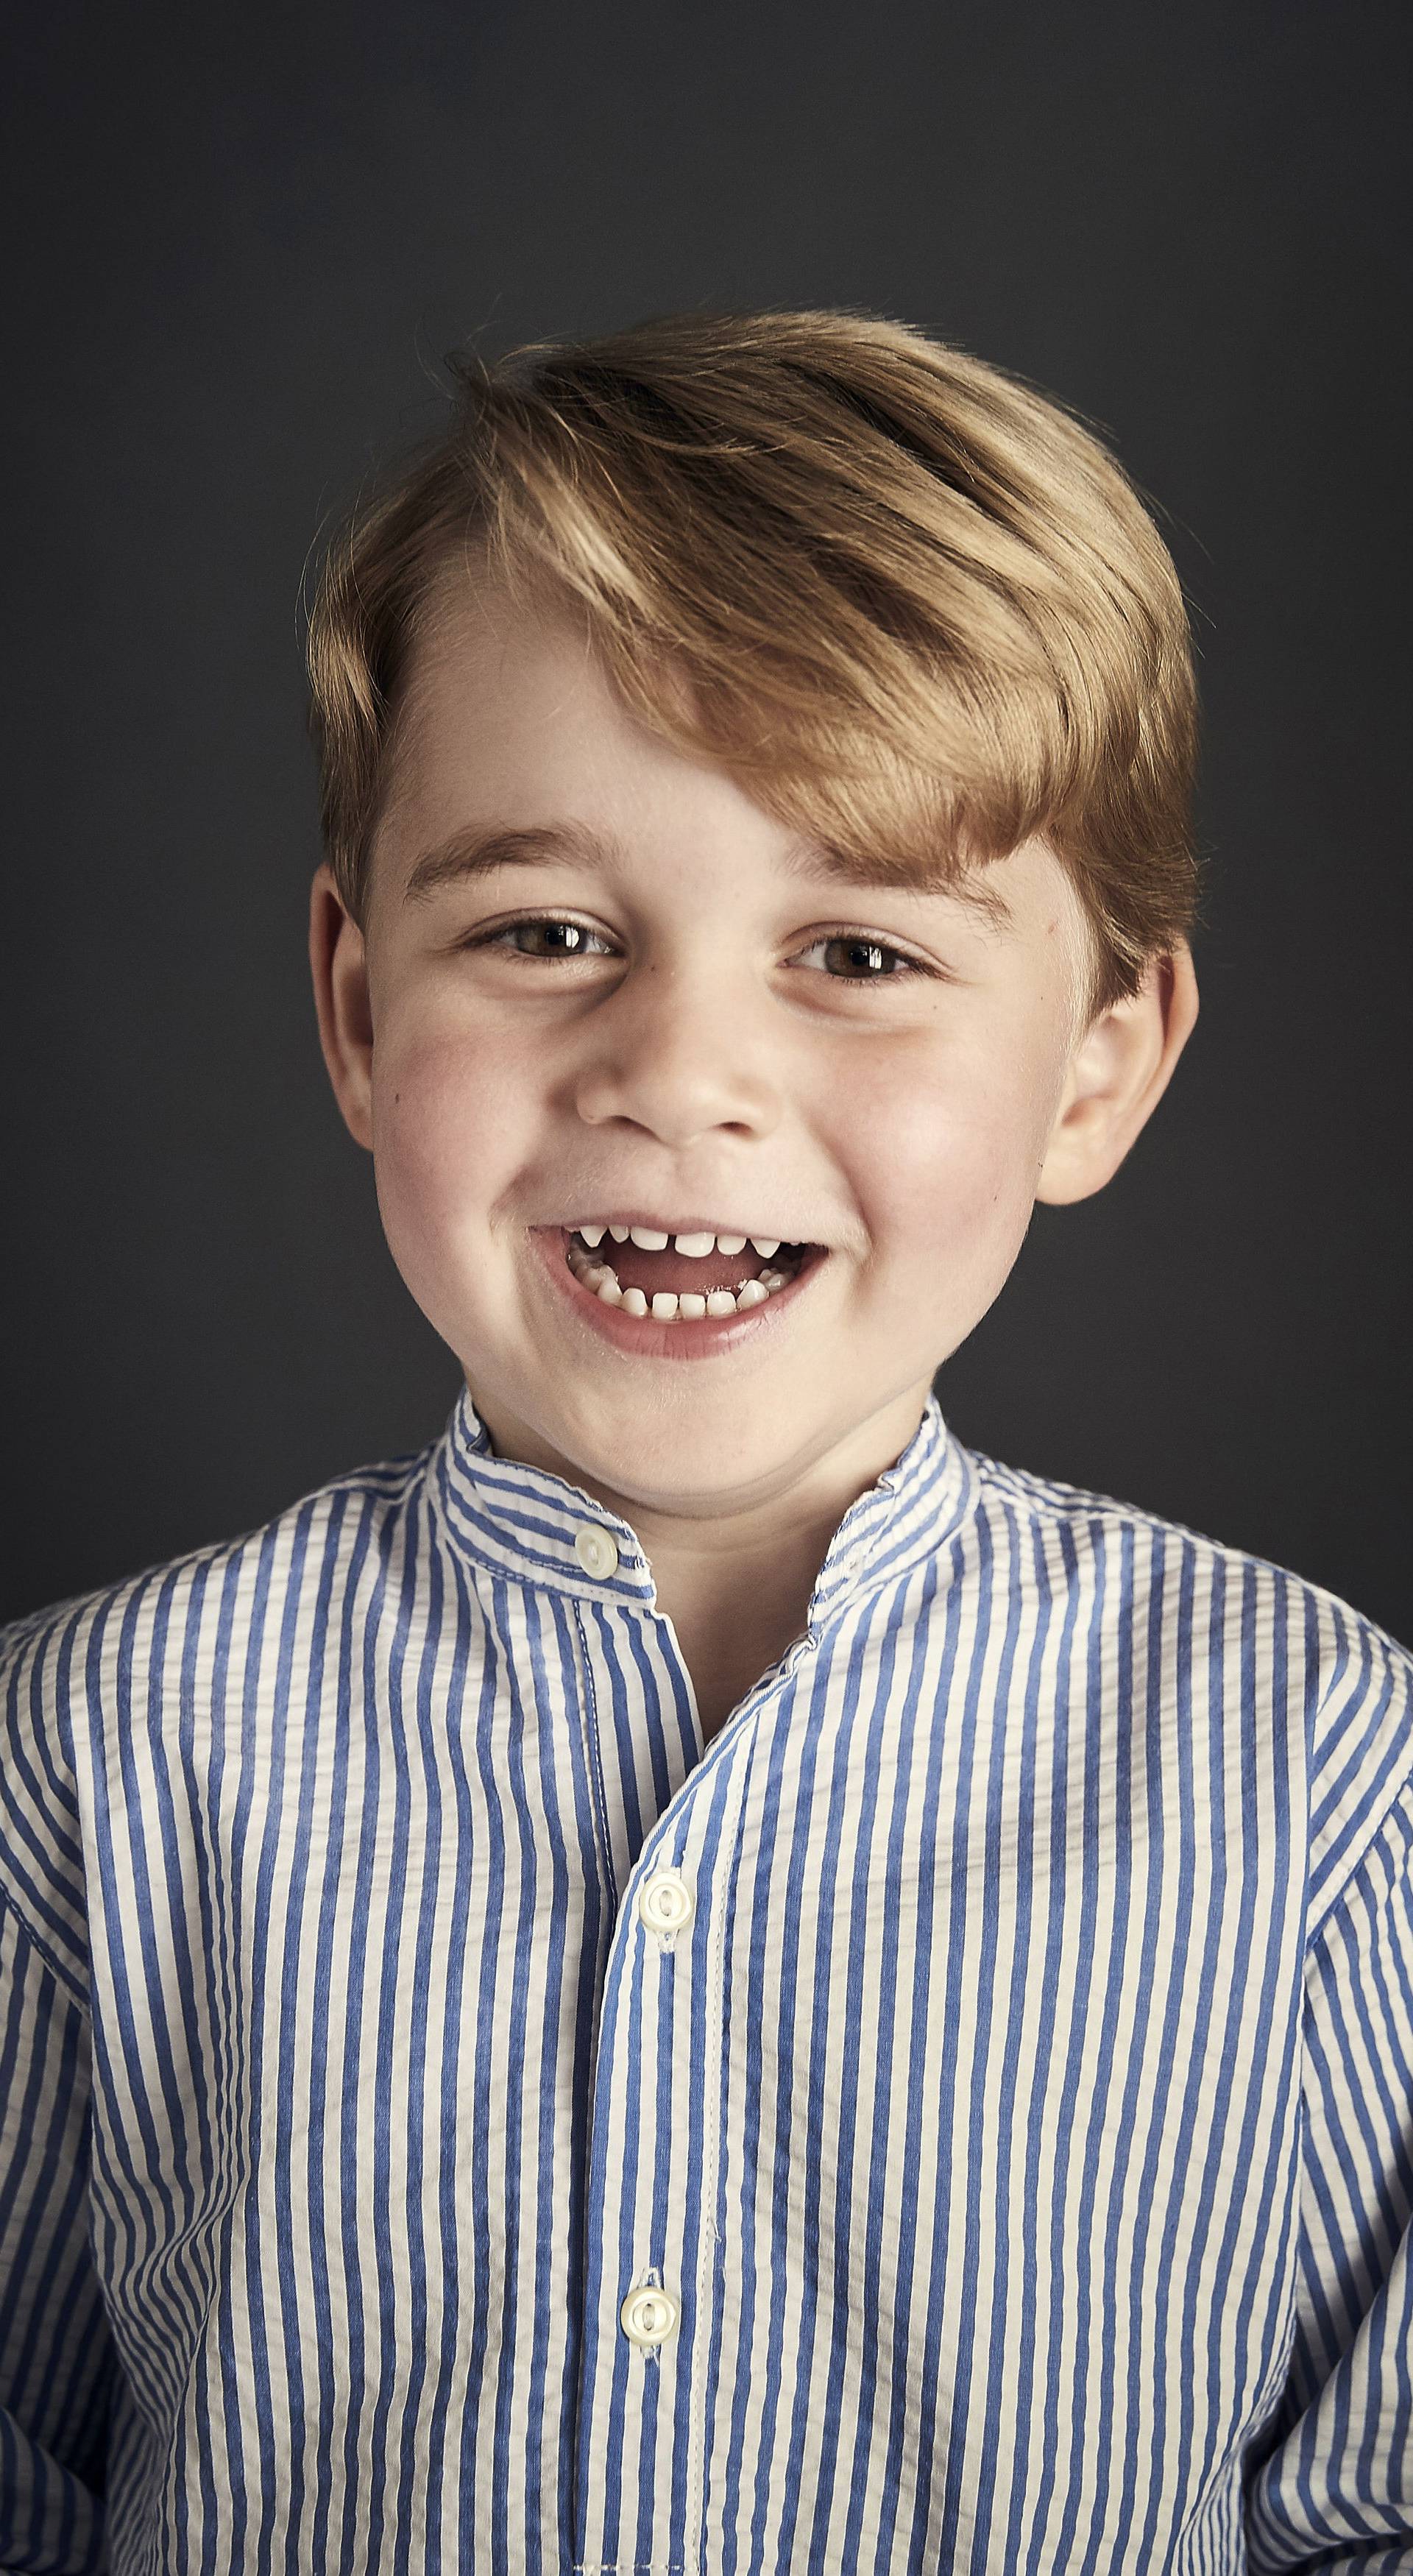 Prince George fourth birthday